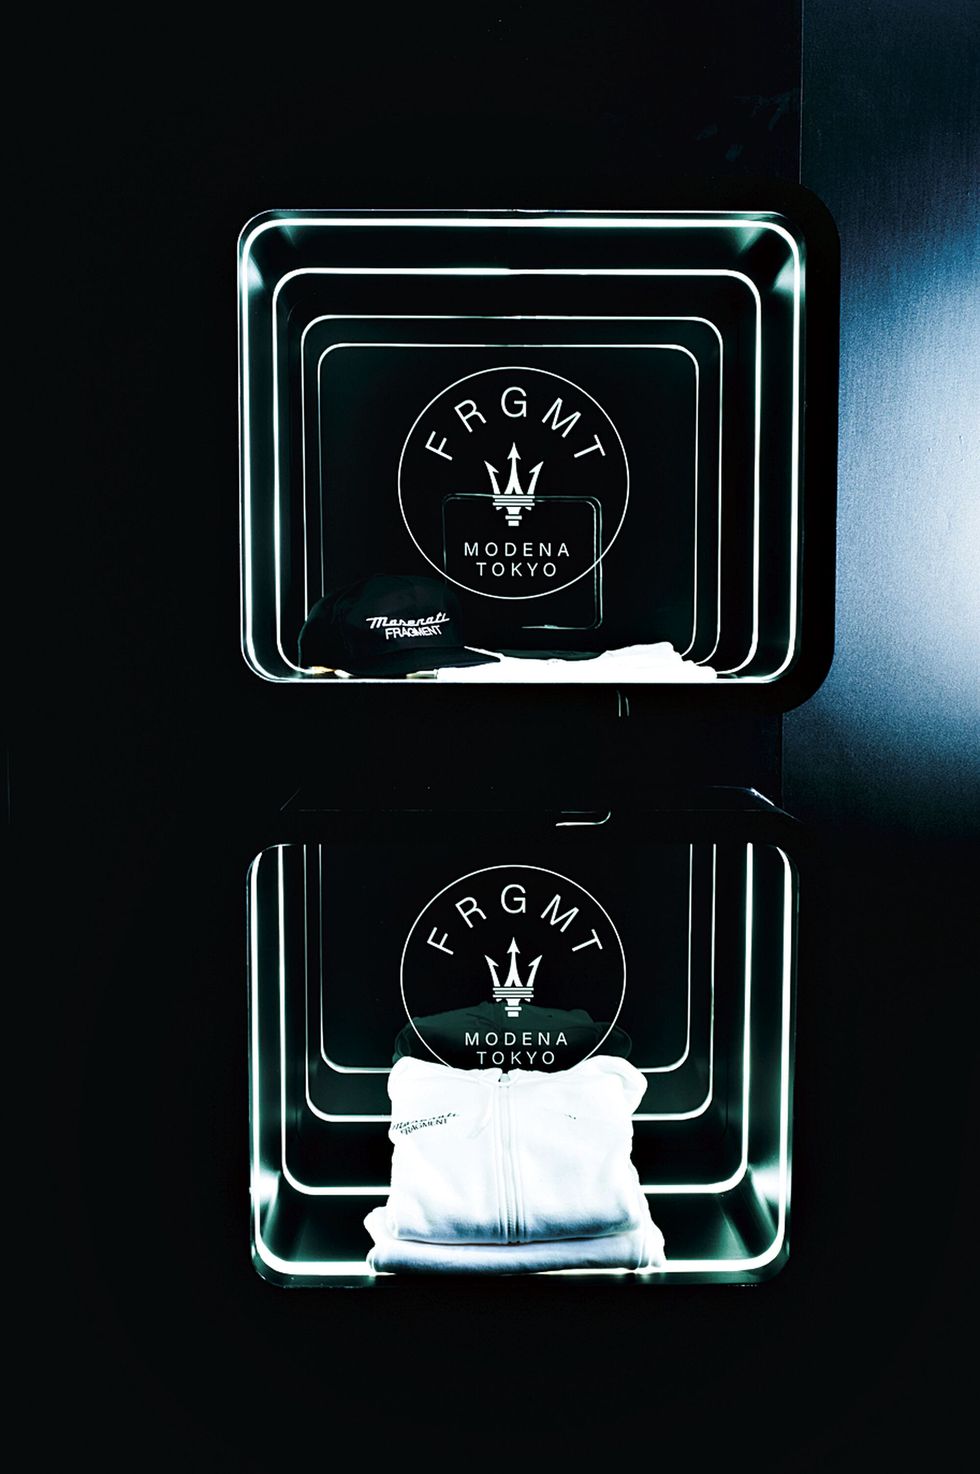 a black box with a white logo